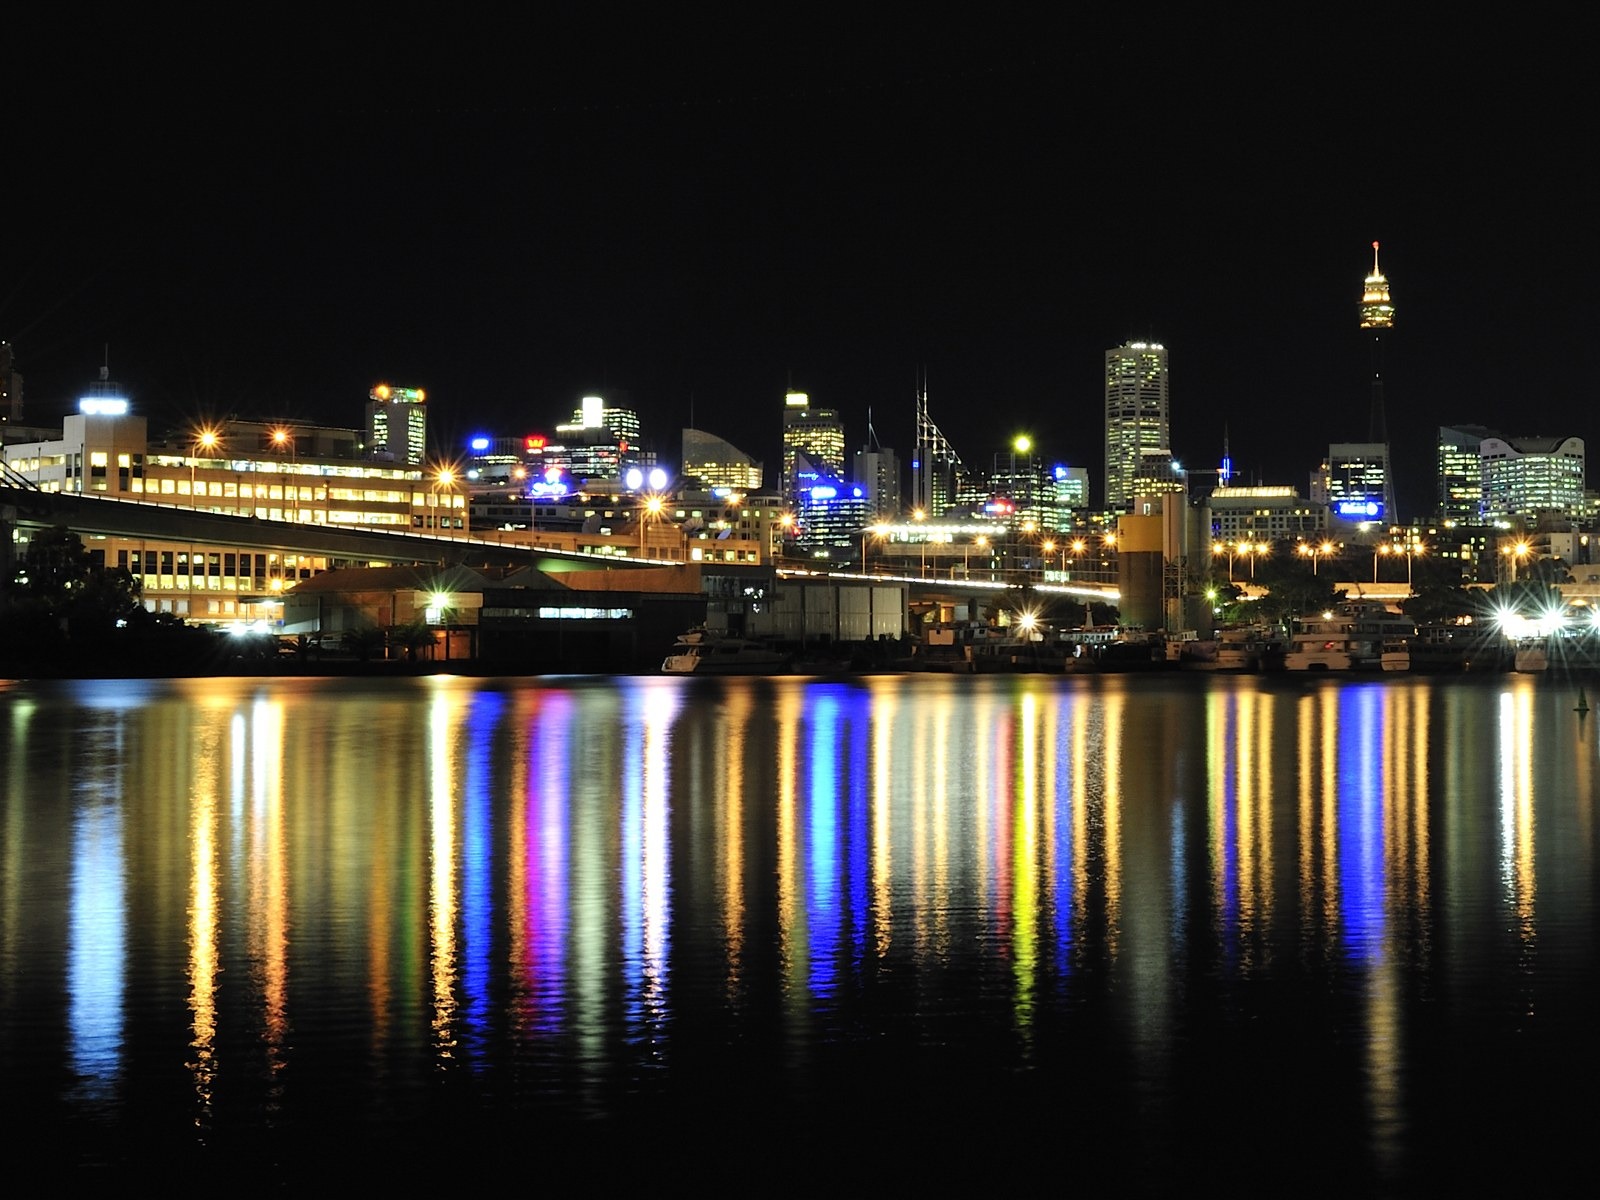 シドニーの風景のHD画像 #5 - 1600x1200